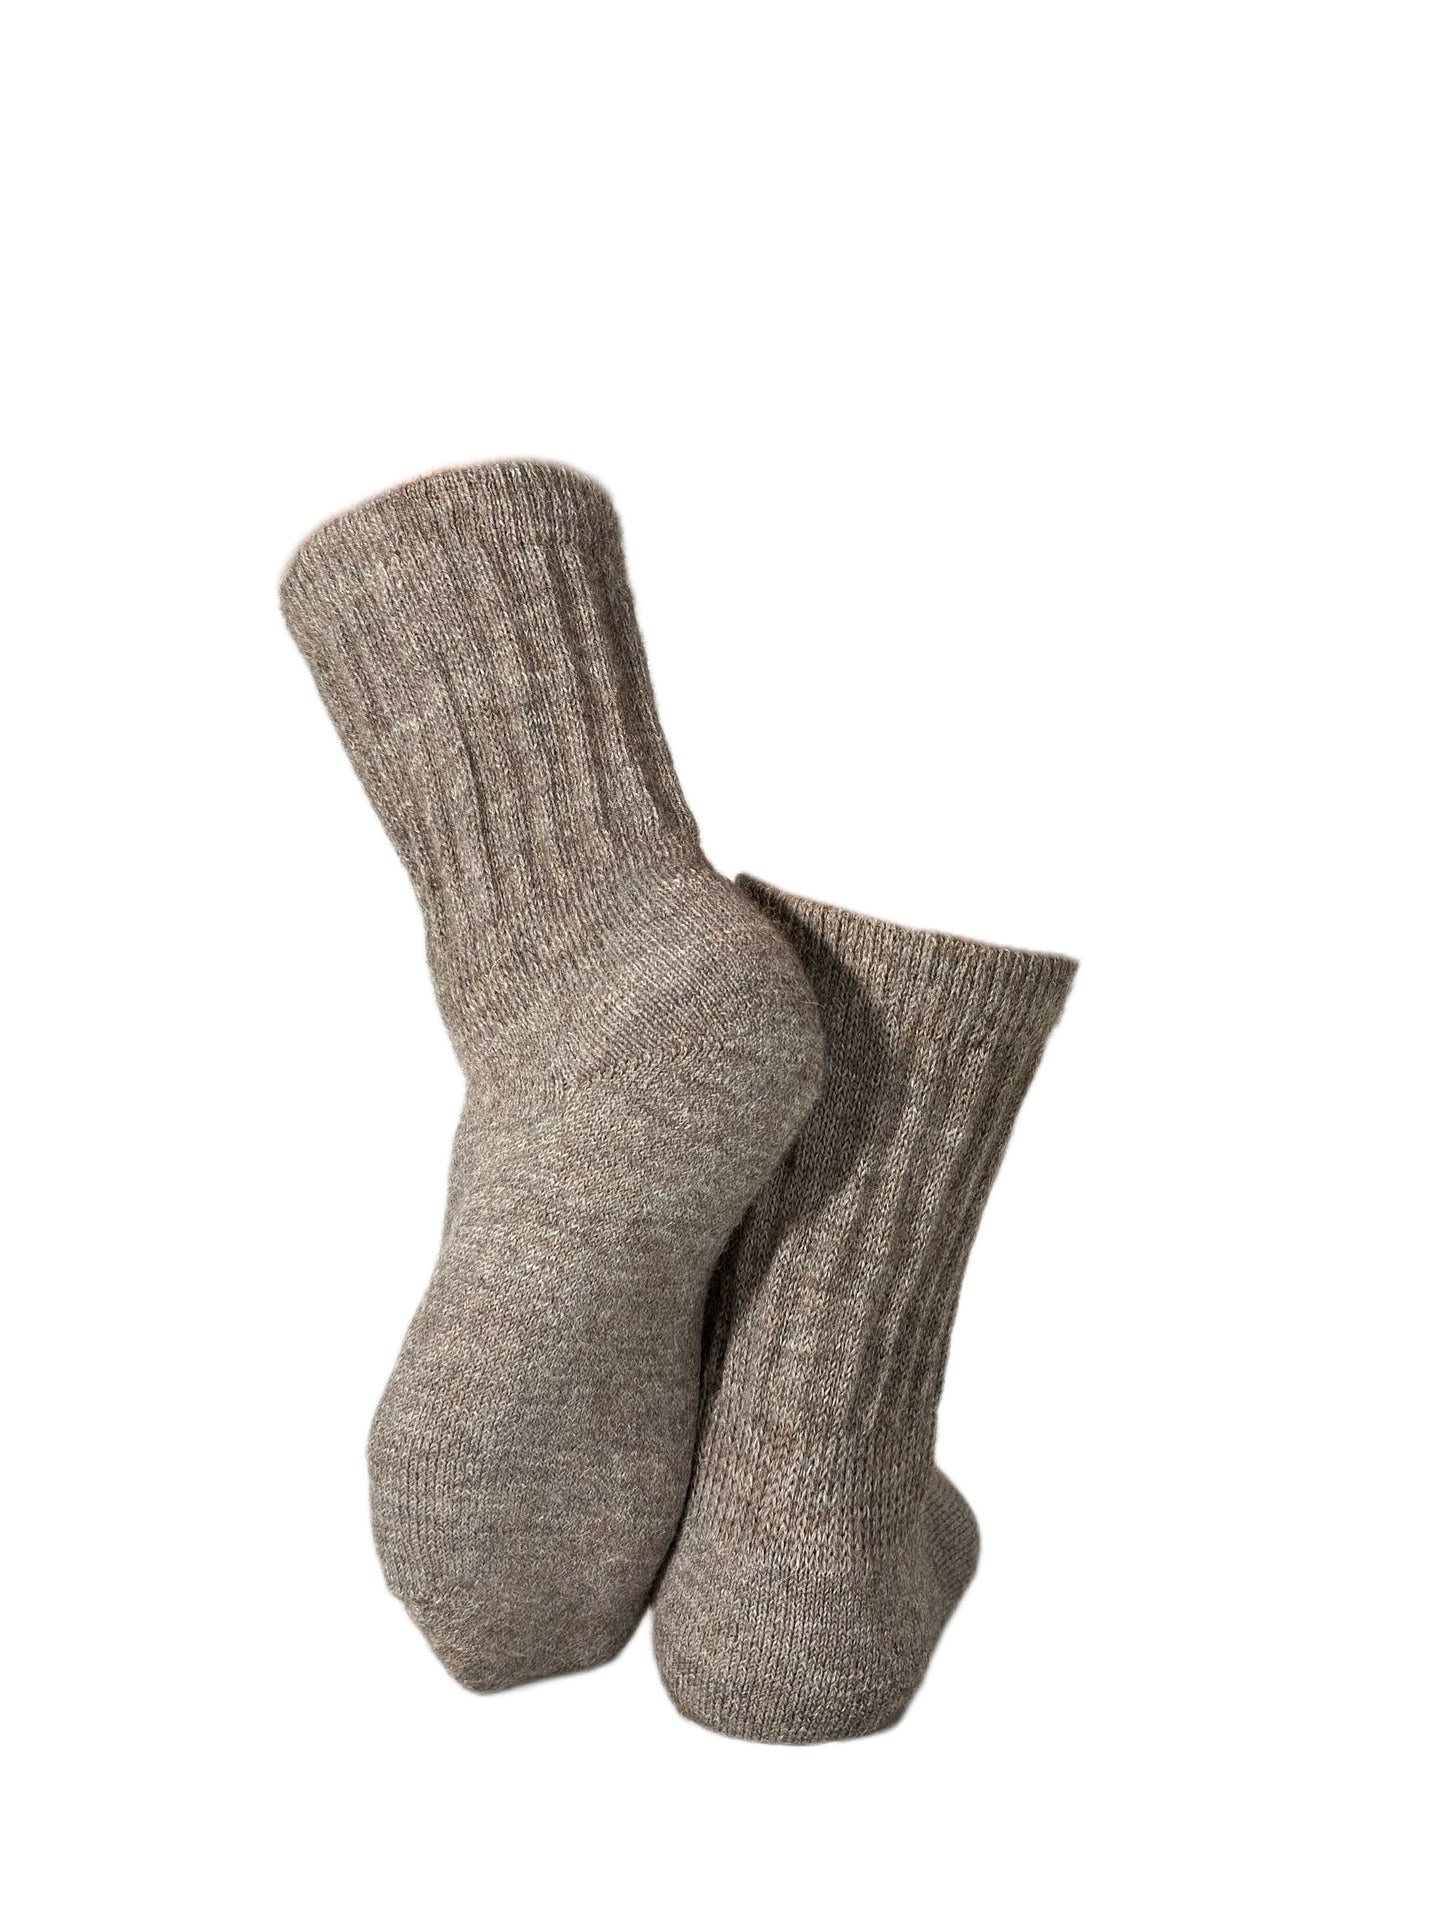 The Meråker sock